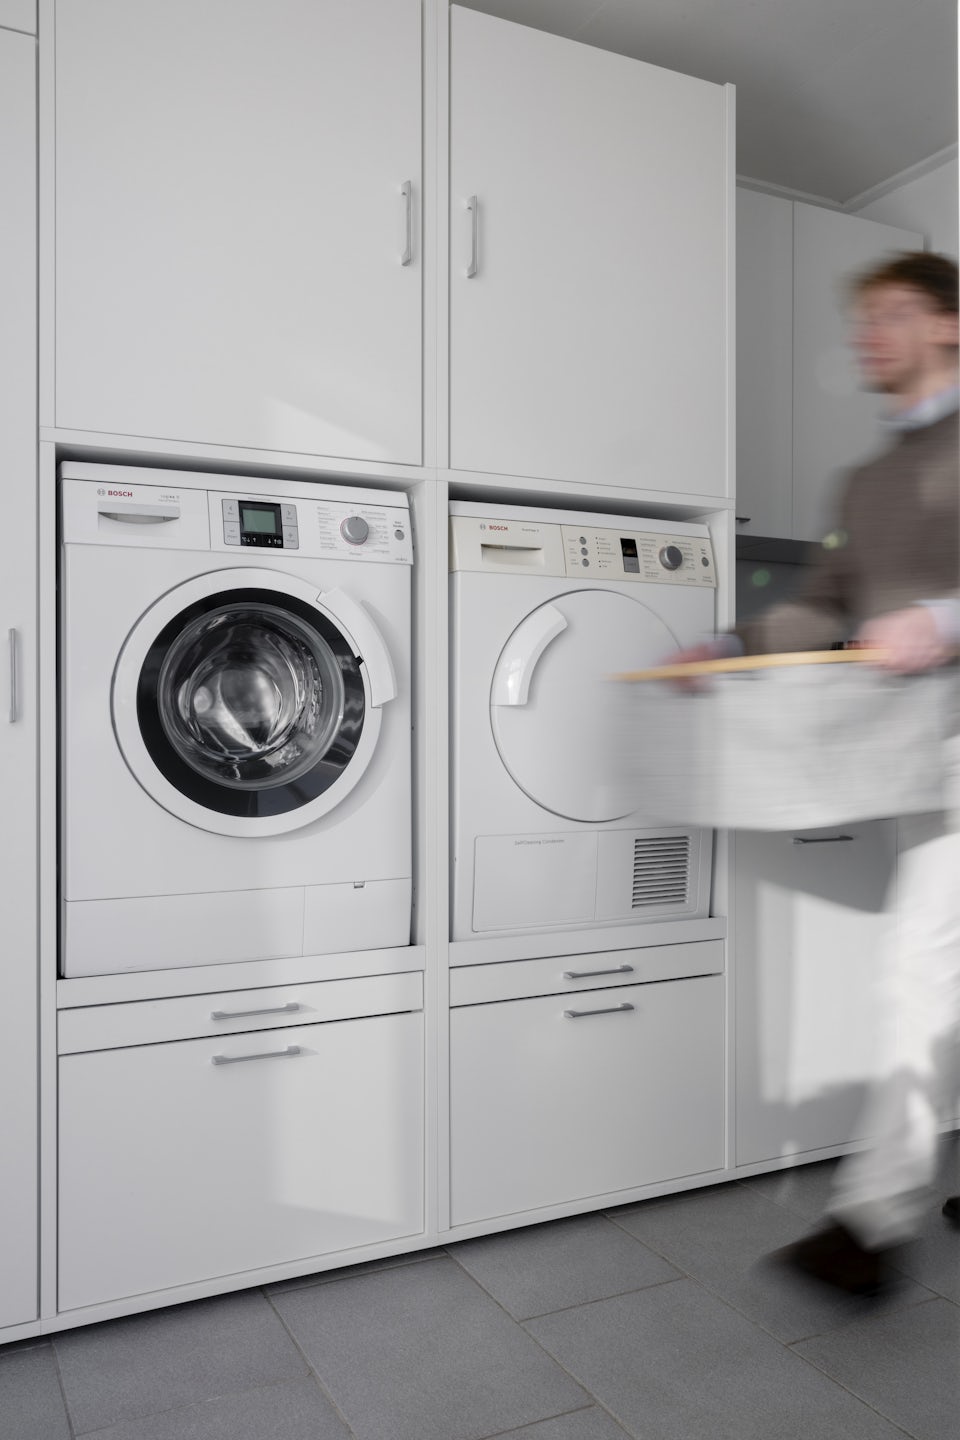 dubbele waskast met wasmachine en droogkast naast elkaar wit bijkeuken inspiratie ideeen met opbergkasten voor wasproducten